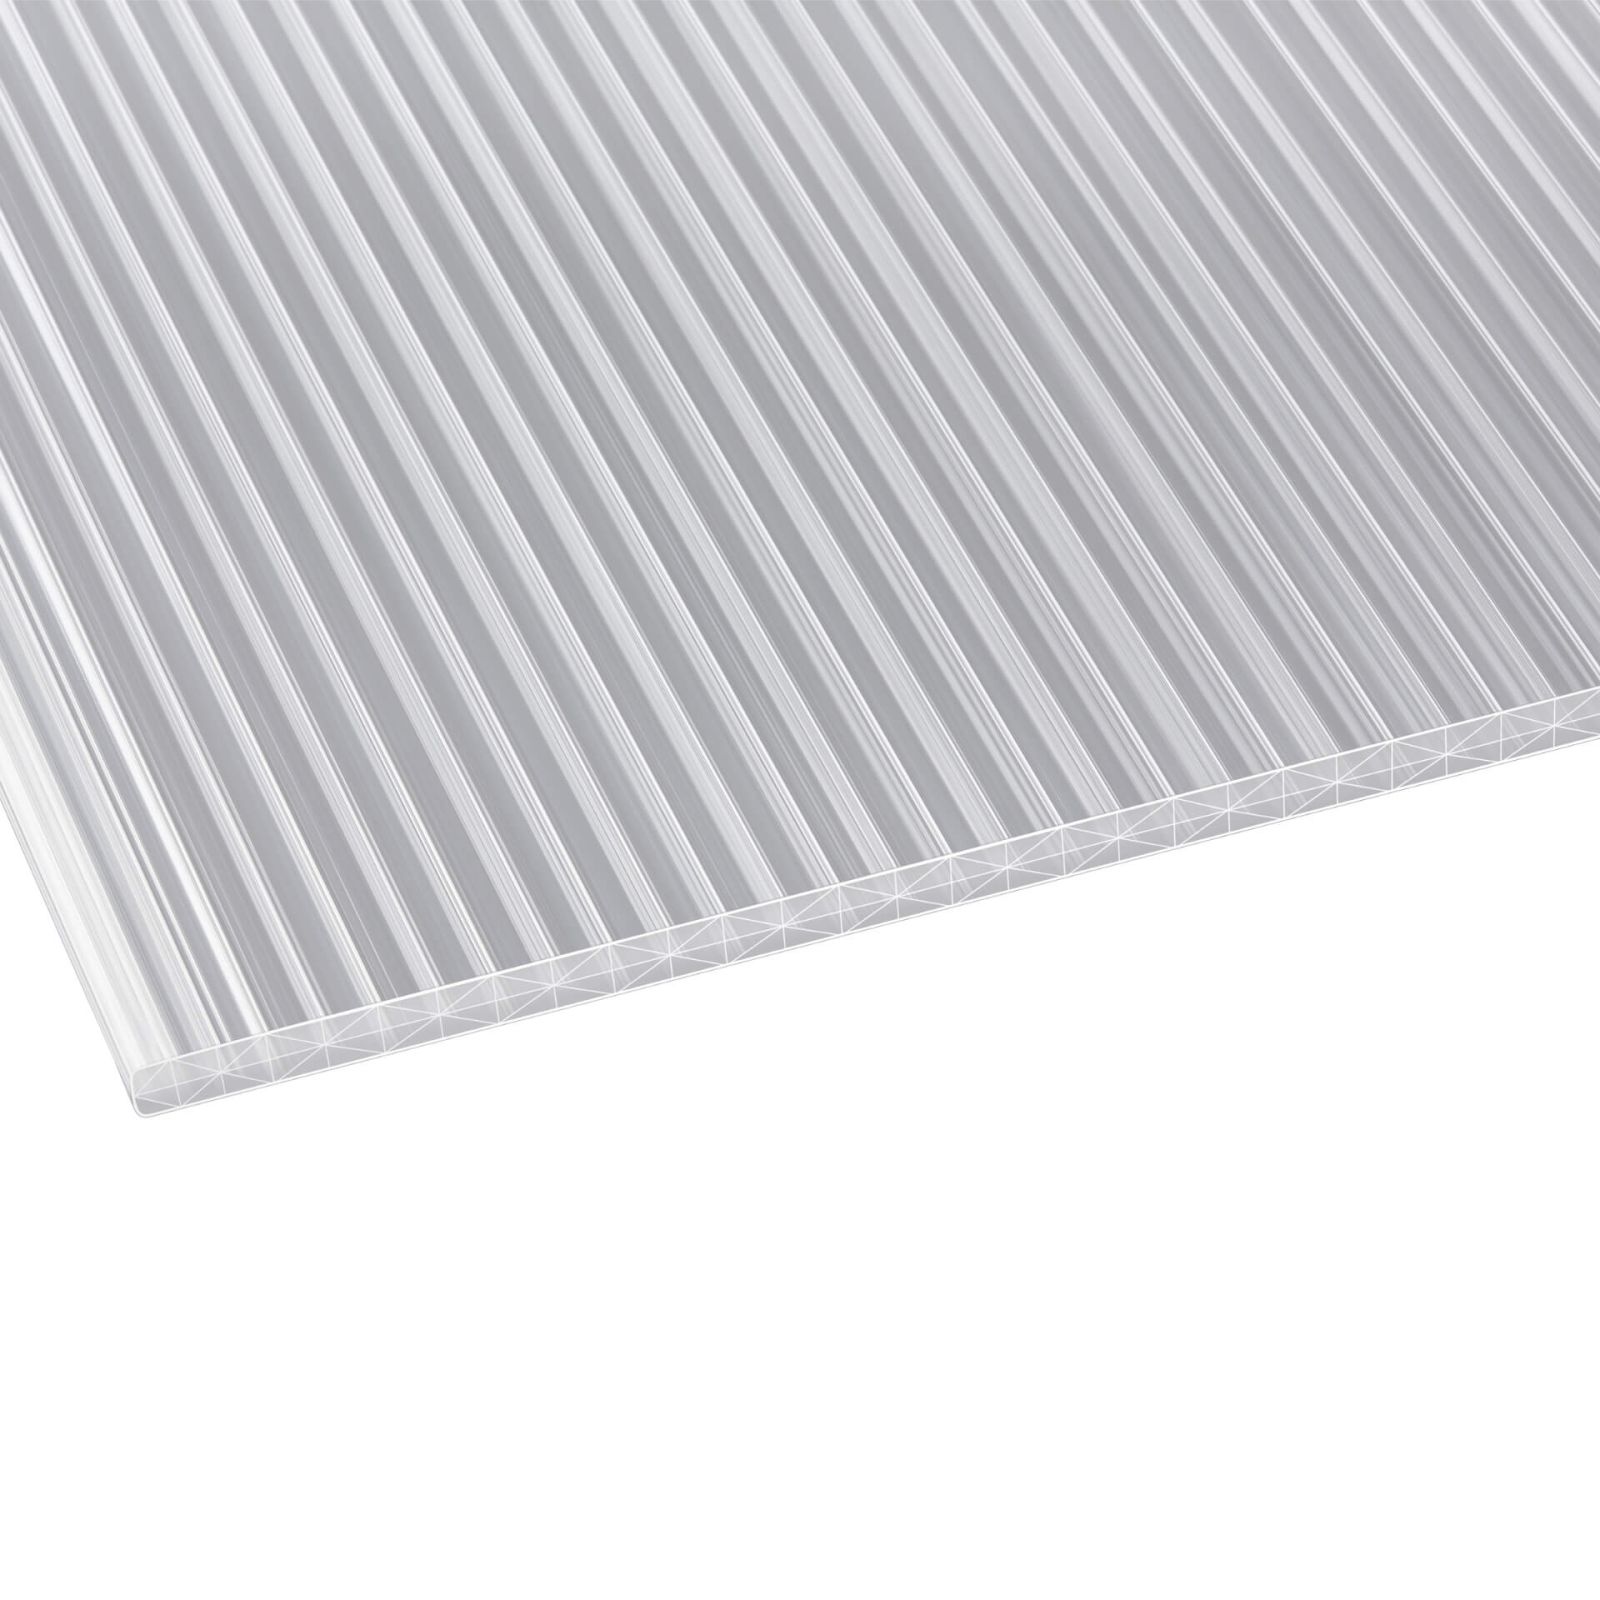 Polycarbonat Stegplatte | 16 mm | Profil A1 | Sparpaket | Plattenbreite 980 mm | Klar | Extra stark | Breite 3,08 m | Länge 2,00 m #3